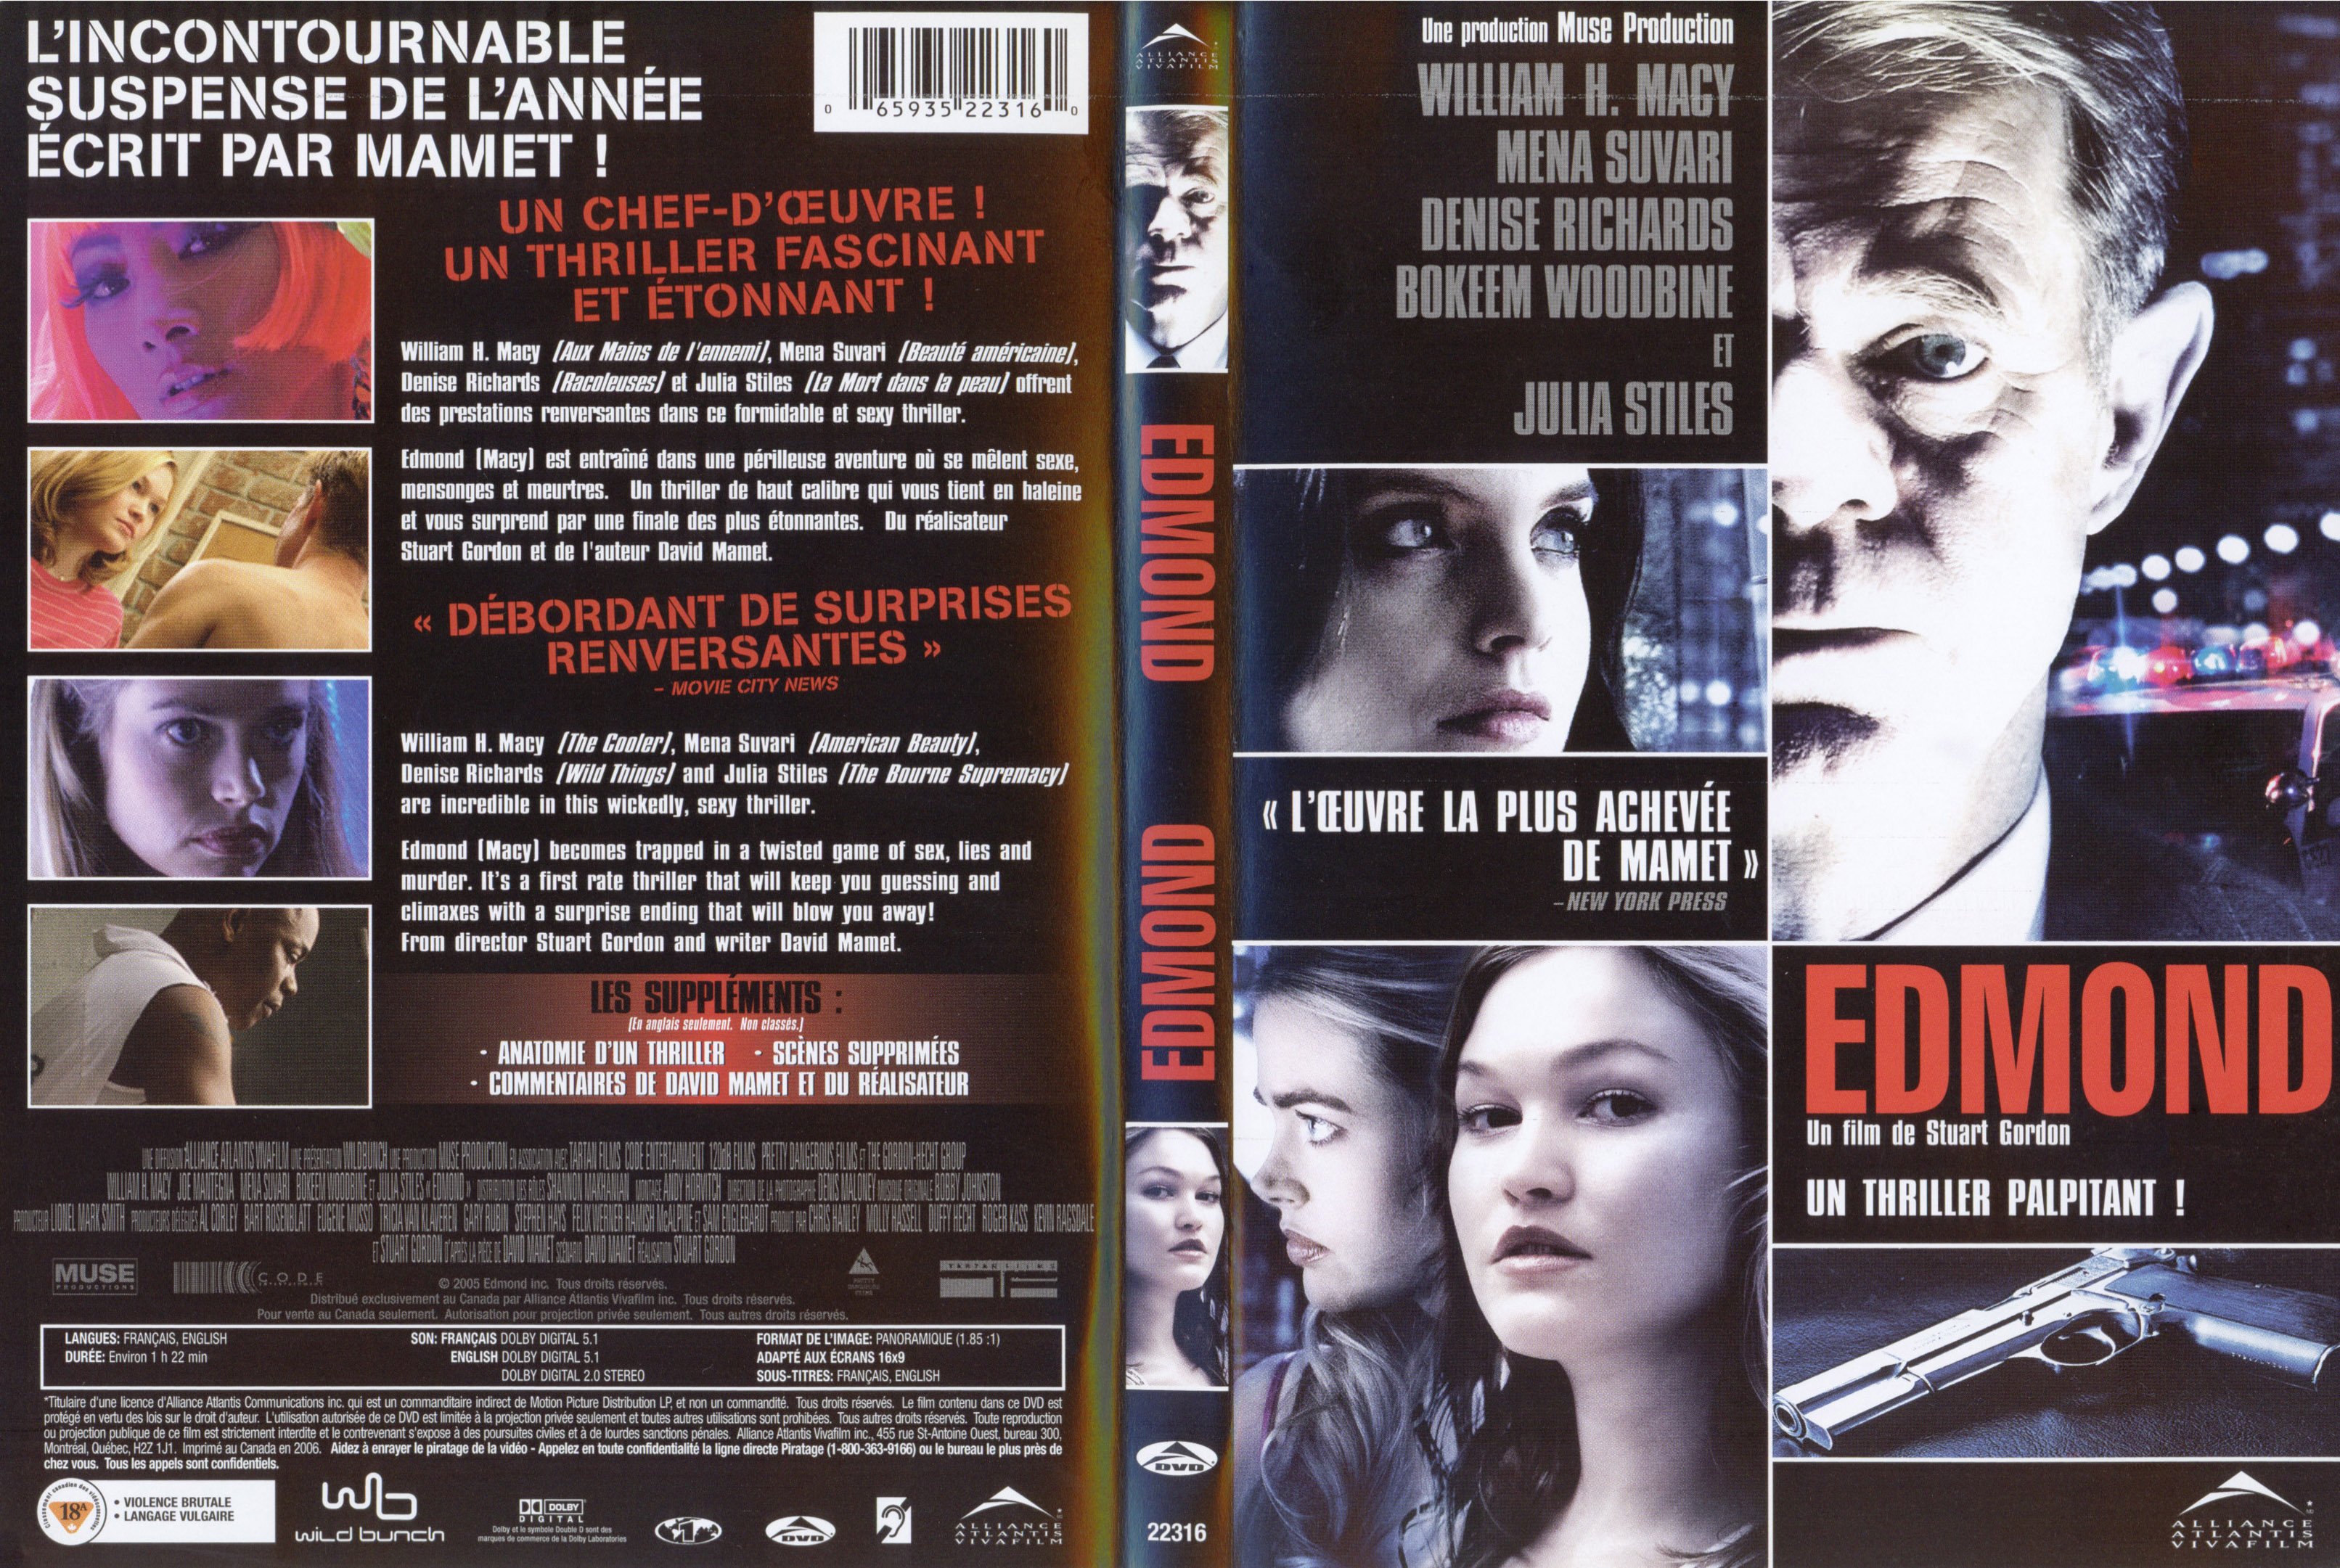 Jaquette DVD Edmond v2